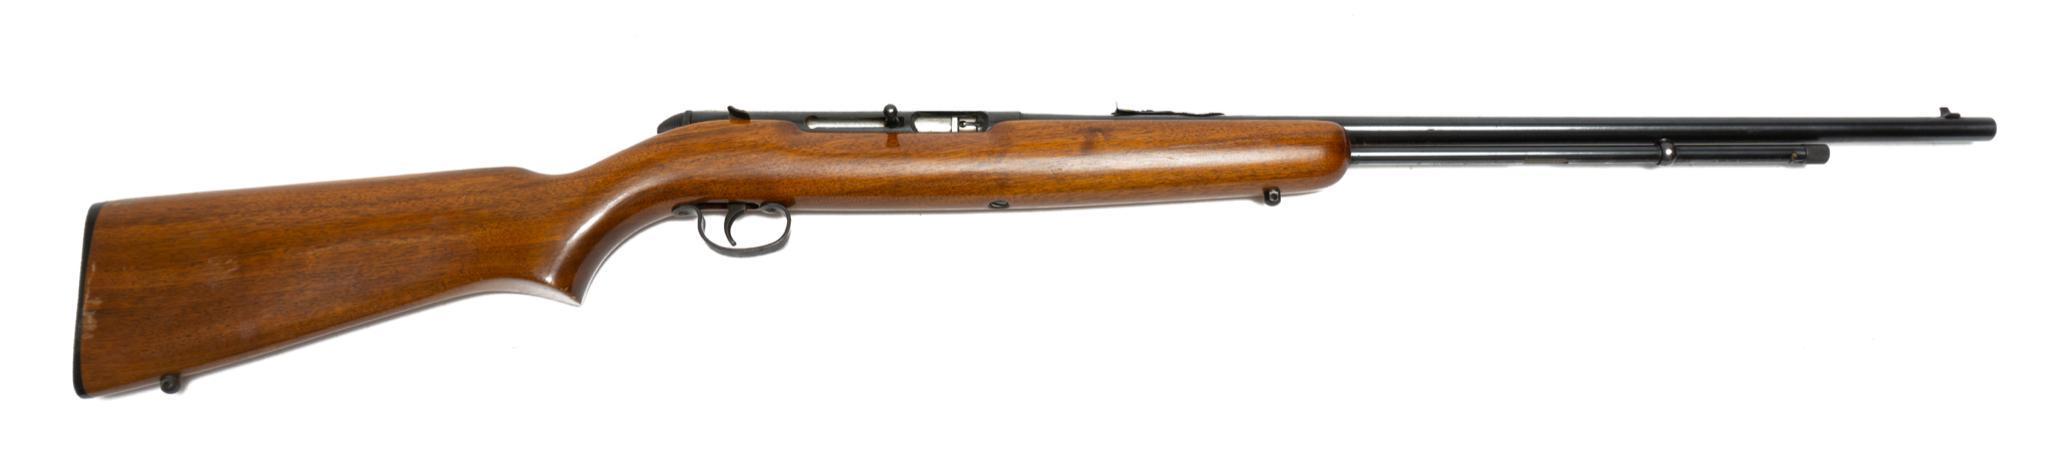 Remington Model 550-1 .22LR Rifle | Vogt Auction